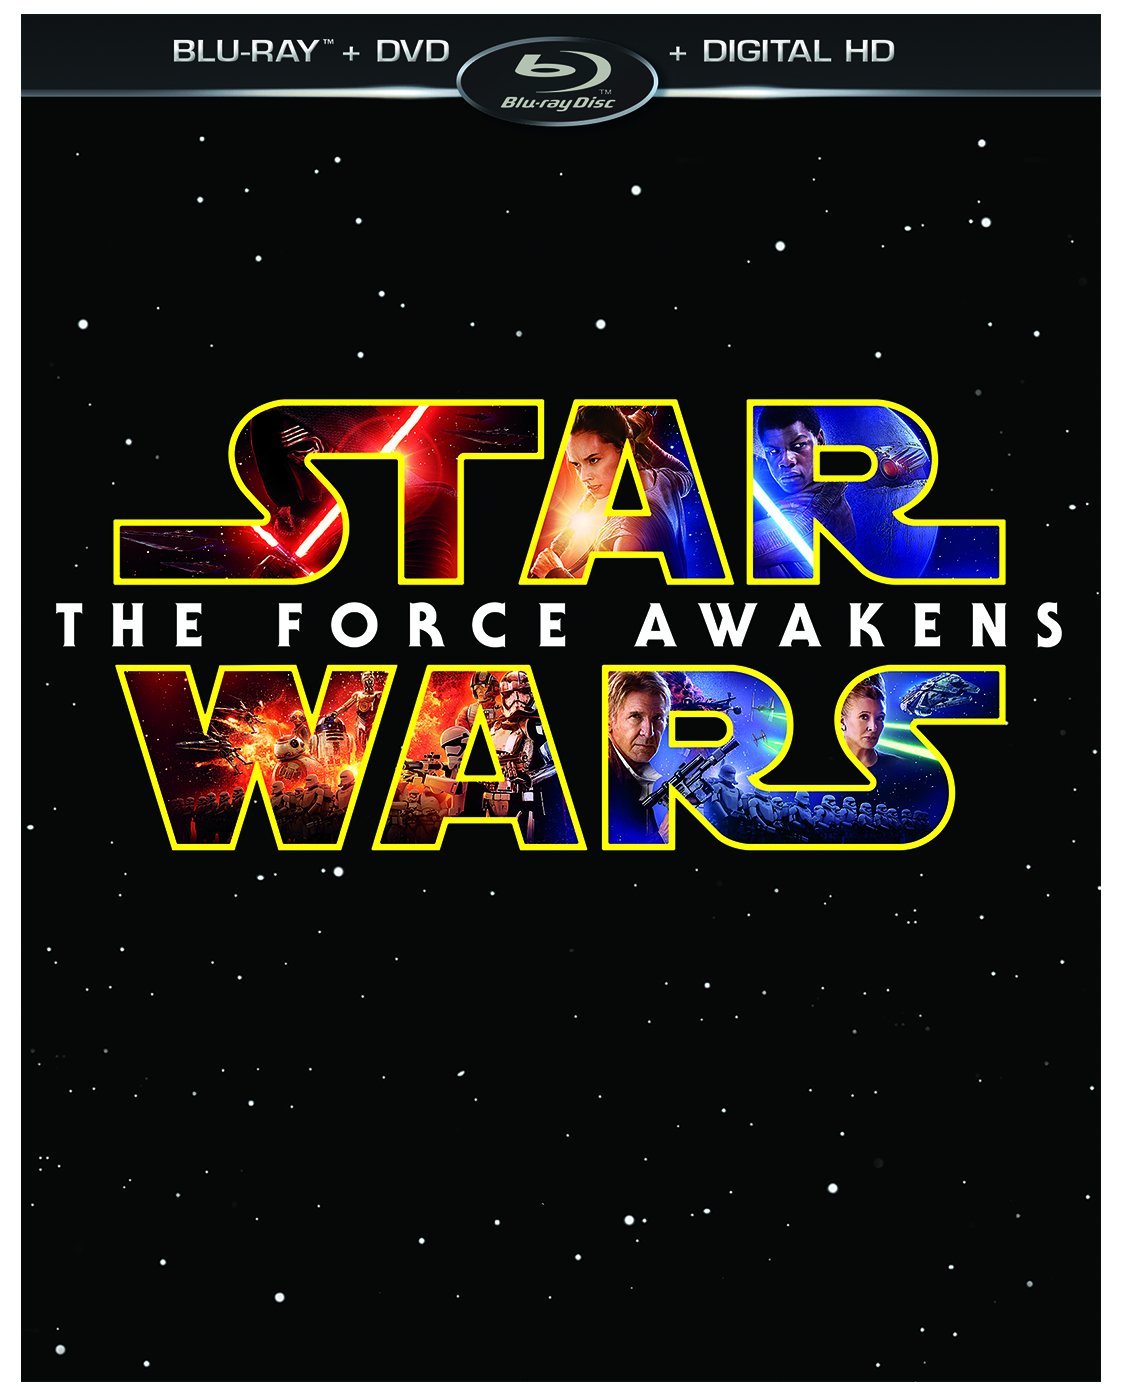 best star wars gift idea 2016 Star Wars- The Force Awakens (Blu-ray:DVD:Digital HD)